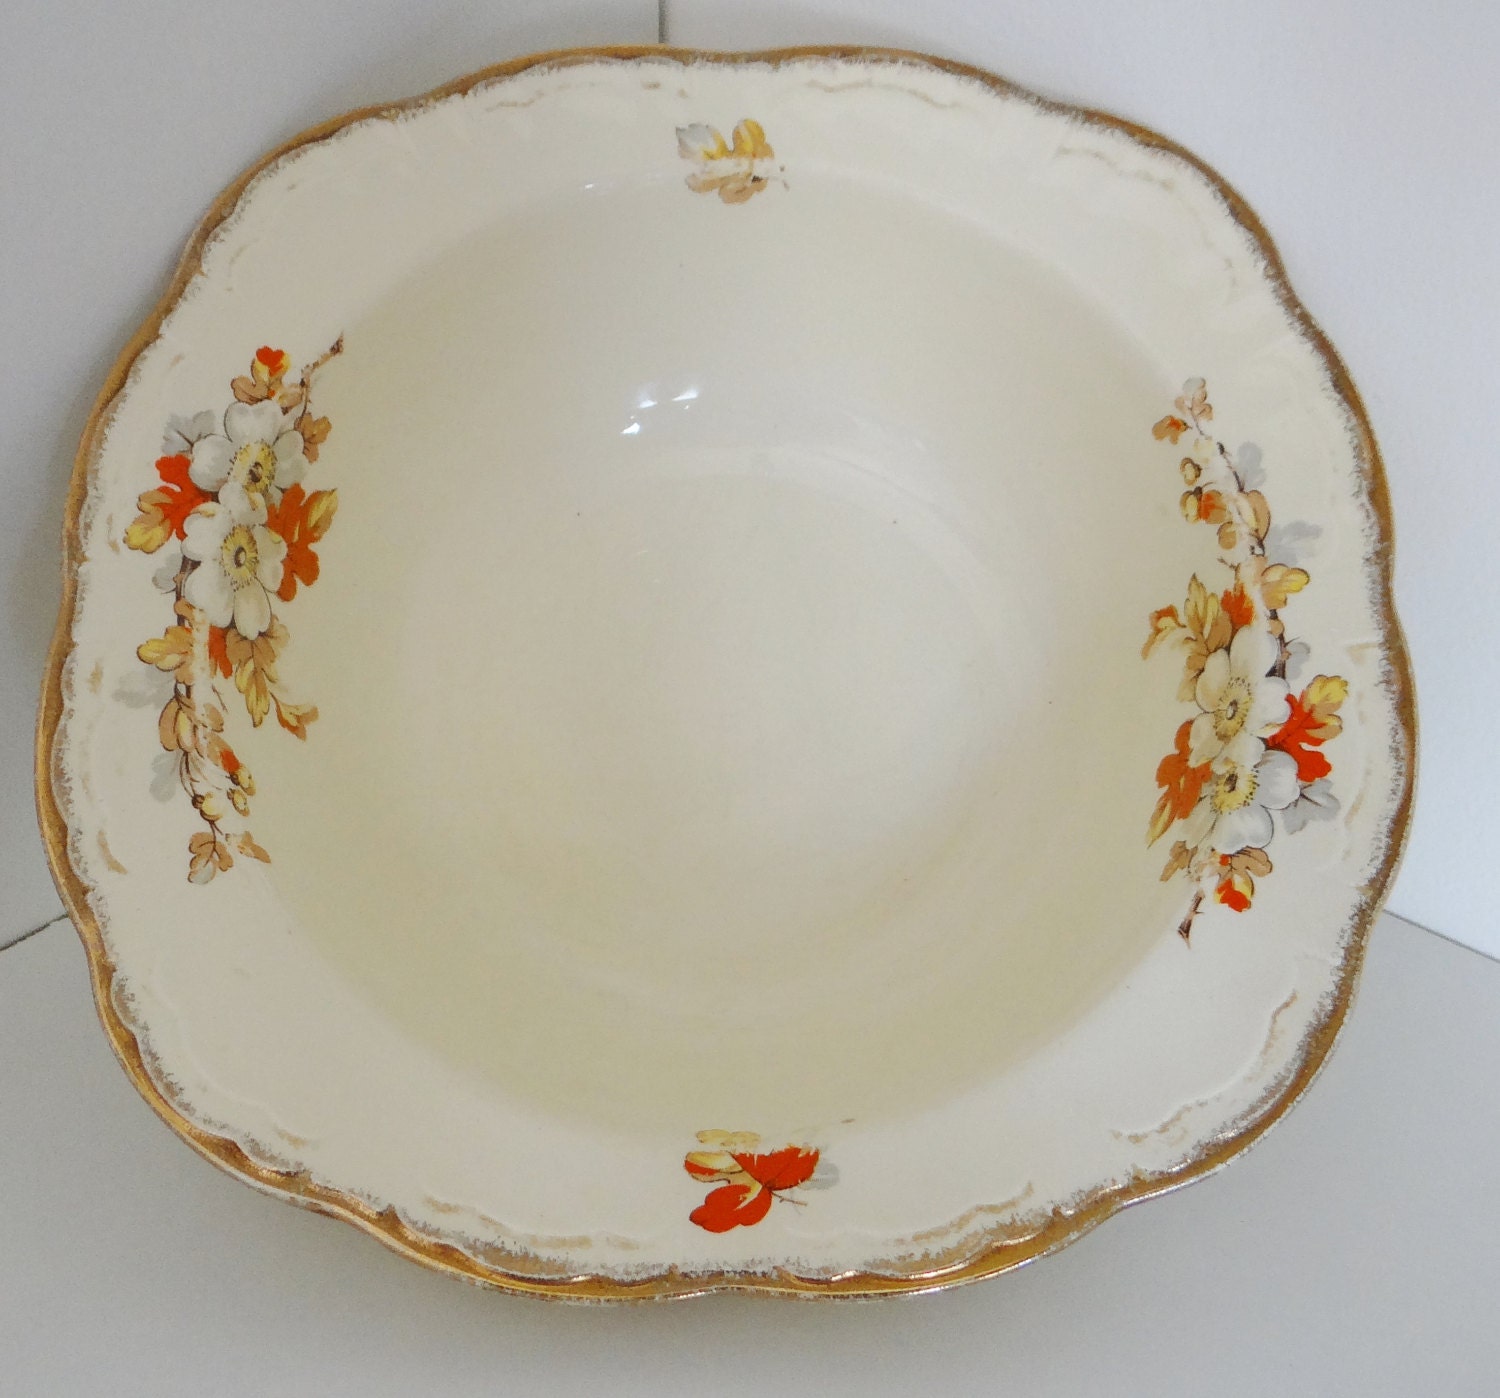 Vintage Serving Bowl Alfred Meakin Marquise Shape Marigold Pattern Gold Rimmed Art Deco Serving